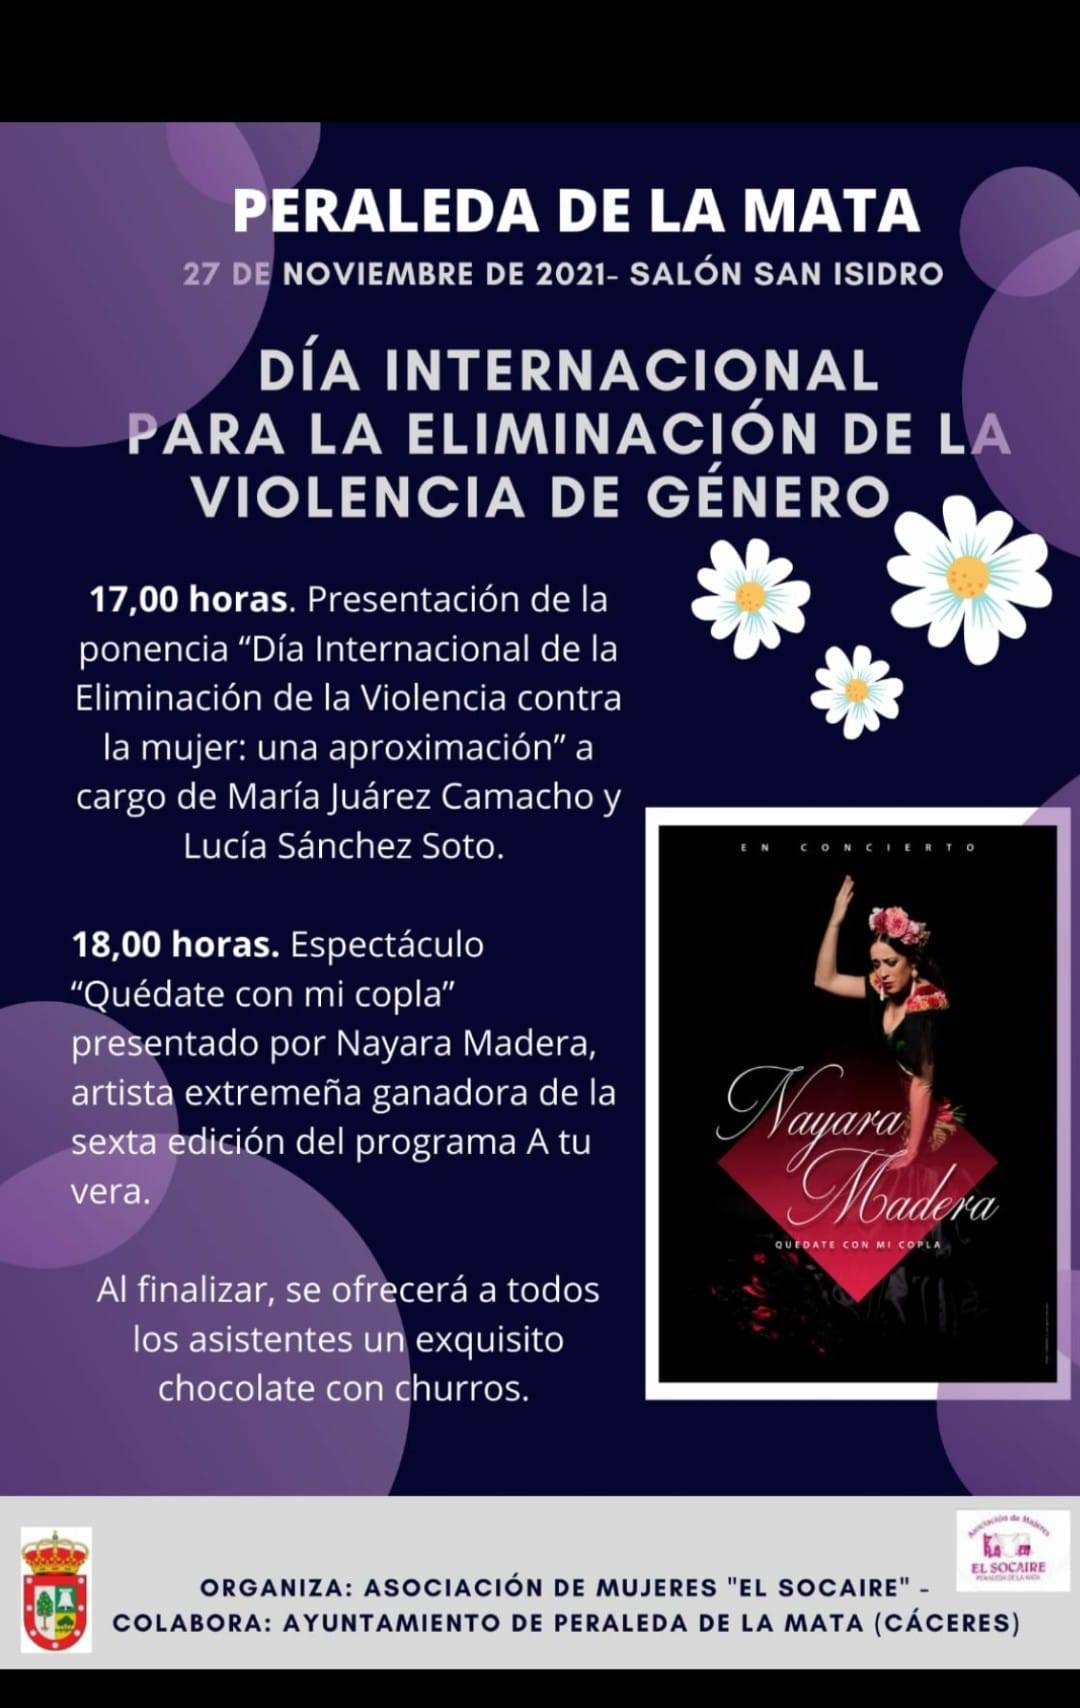 Día Internacional para la Eliminación de la Violencia de Género (2021) - Peraleda de la Mata (Cáceres)